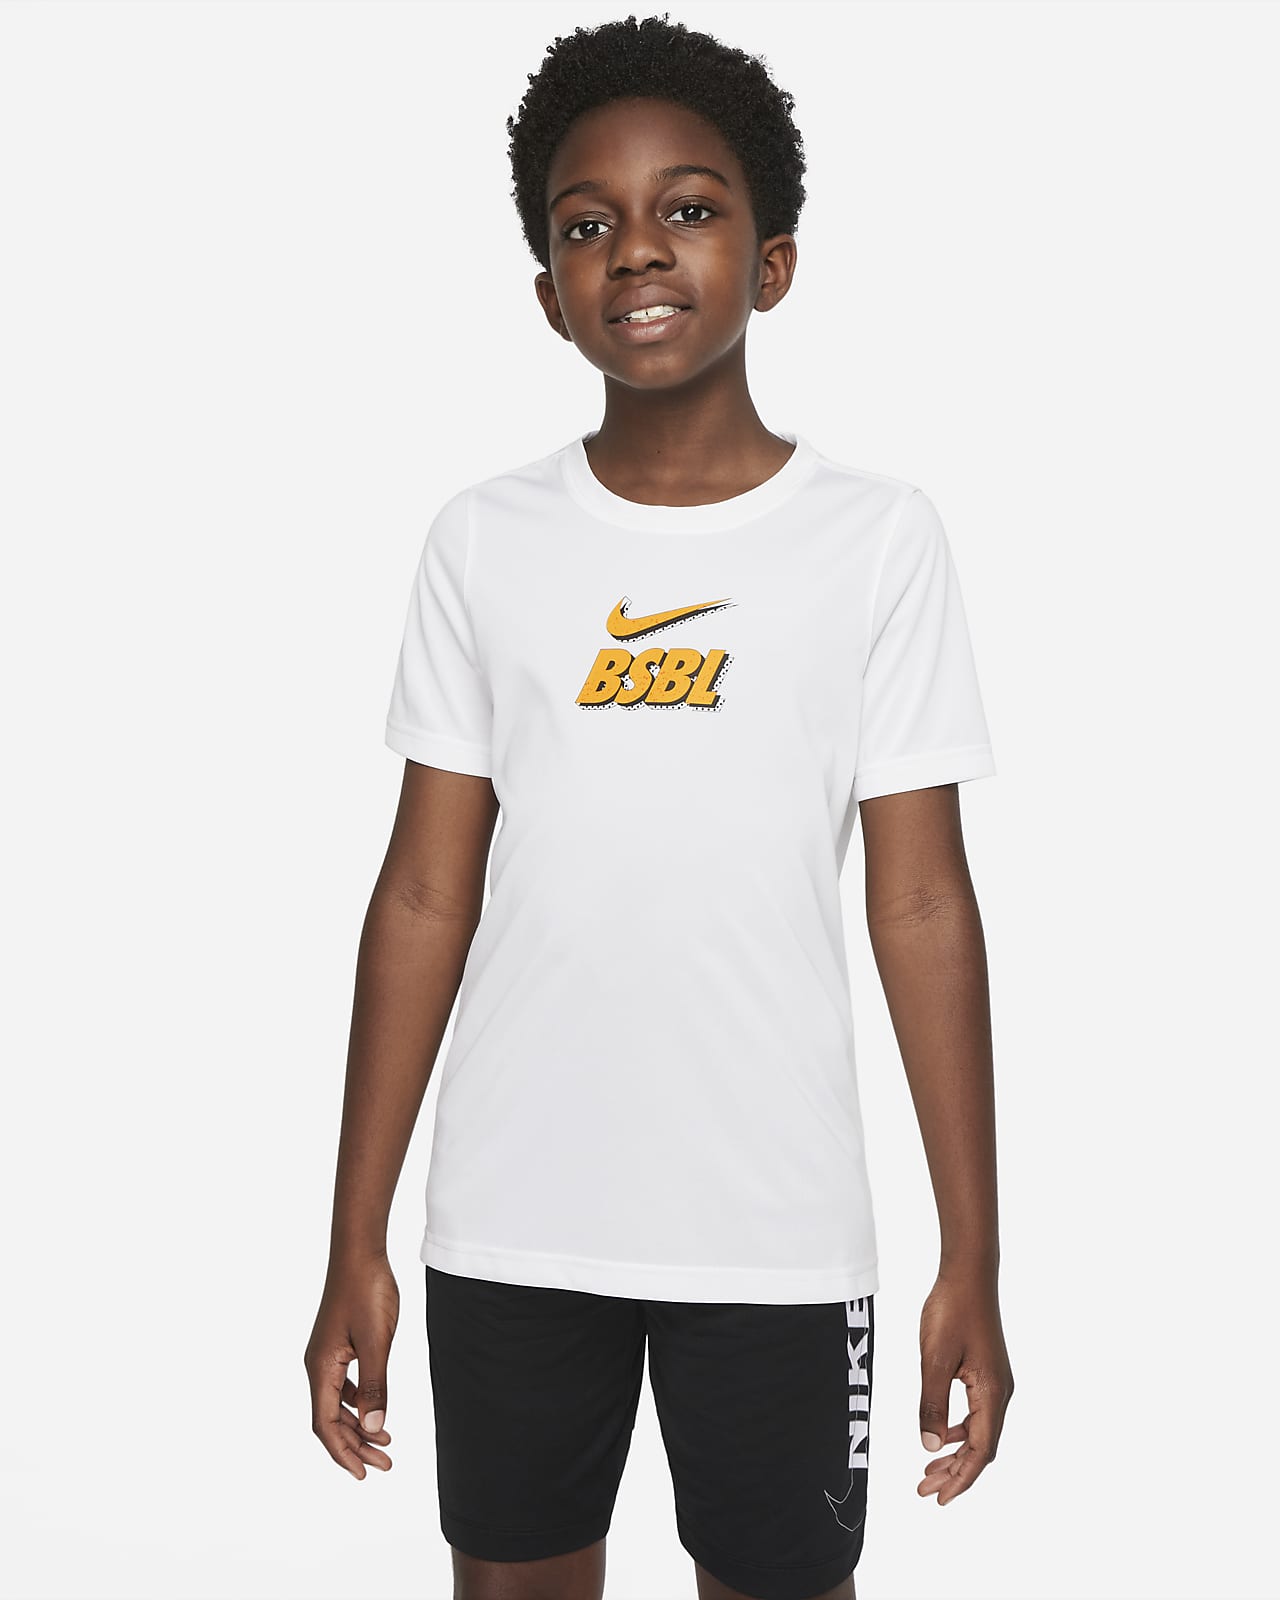 Nike Dri-FIT Big Kids' (Boys') T-Shirt